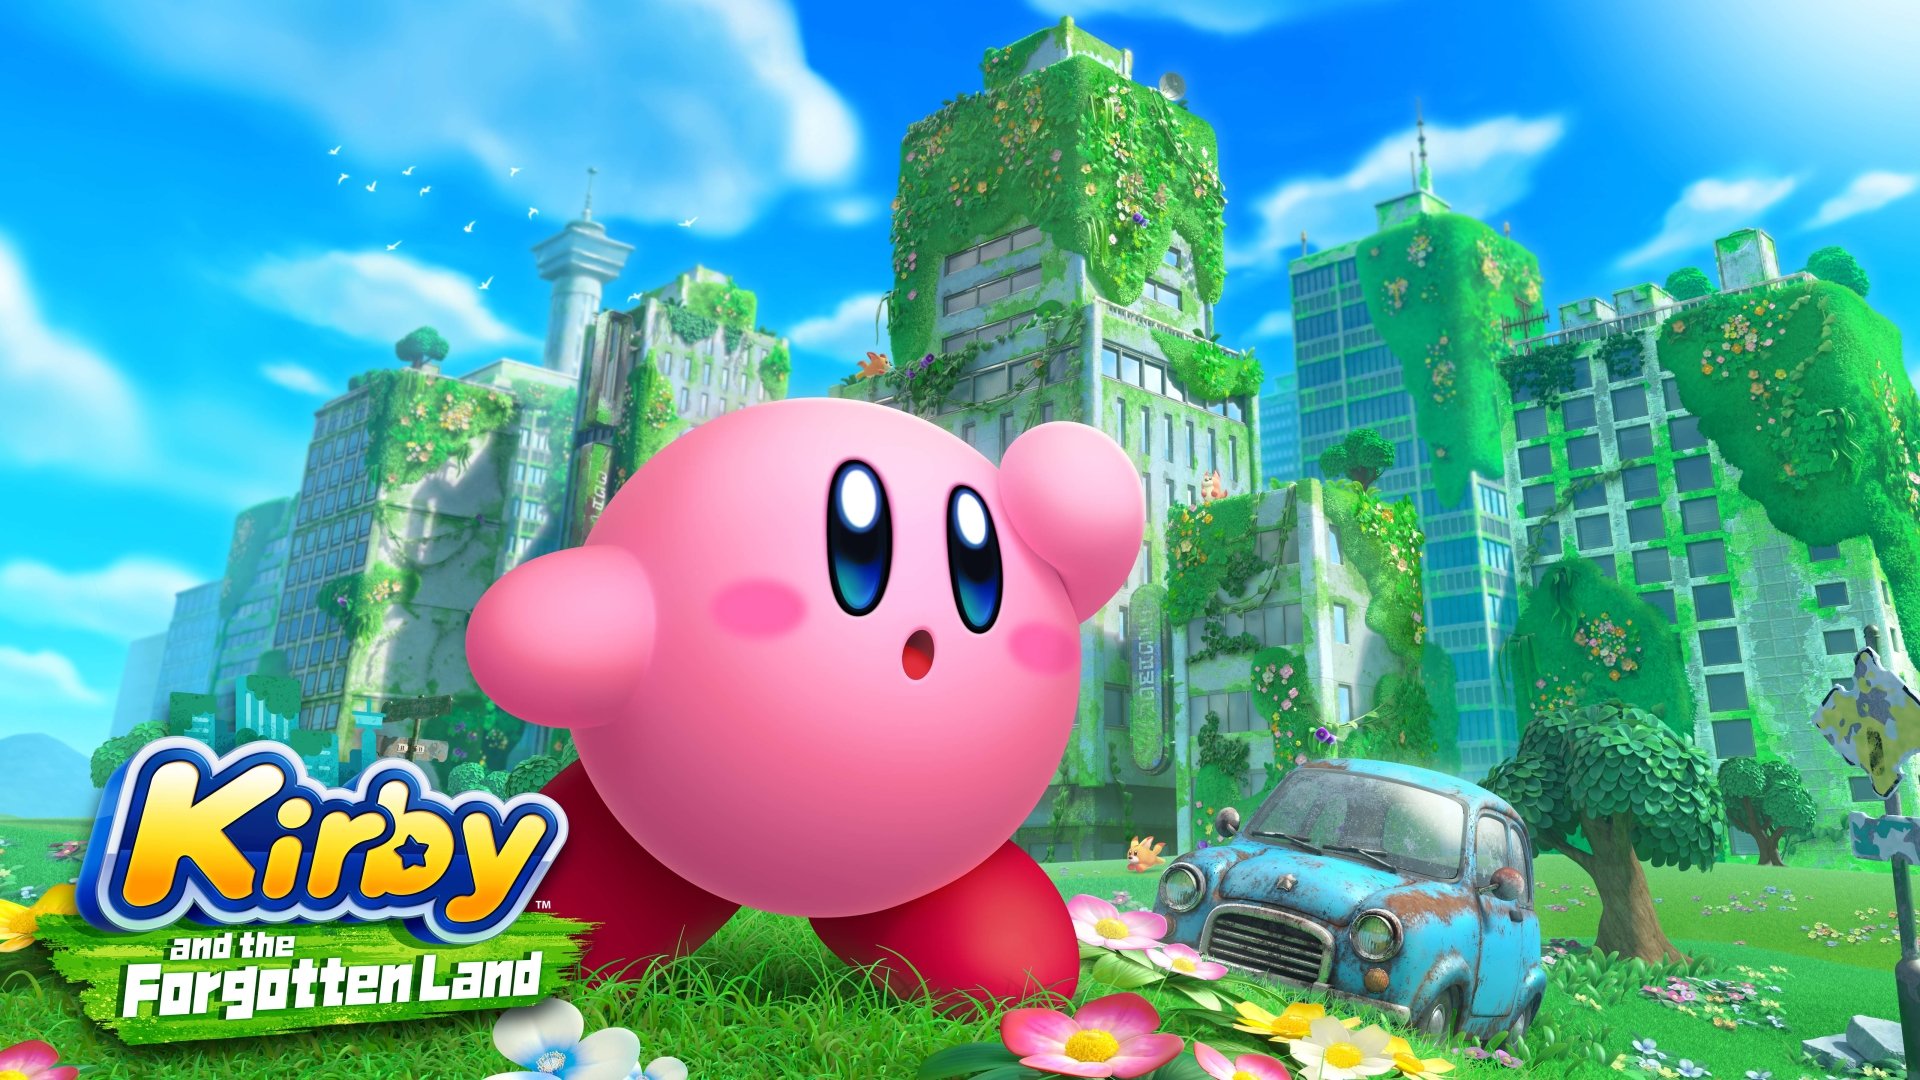 Best Nintendo Switch Co-Op Games - Kirby